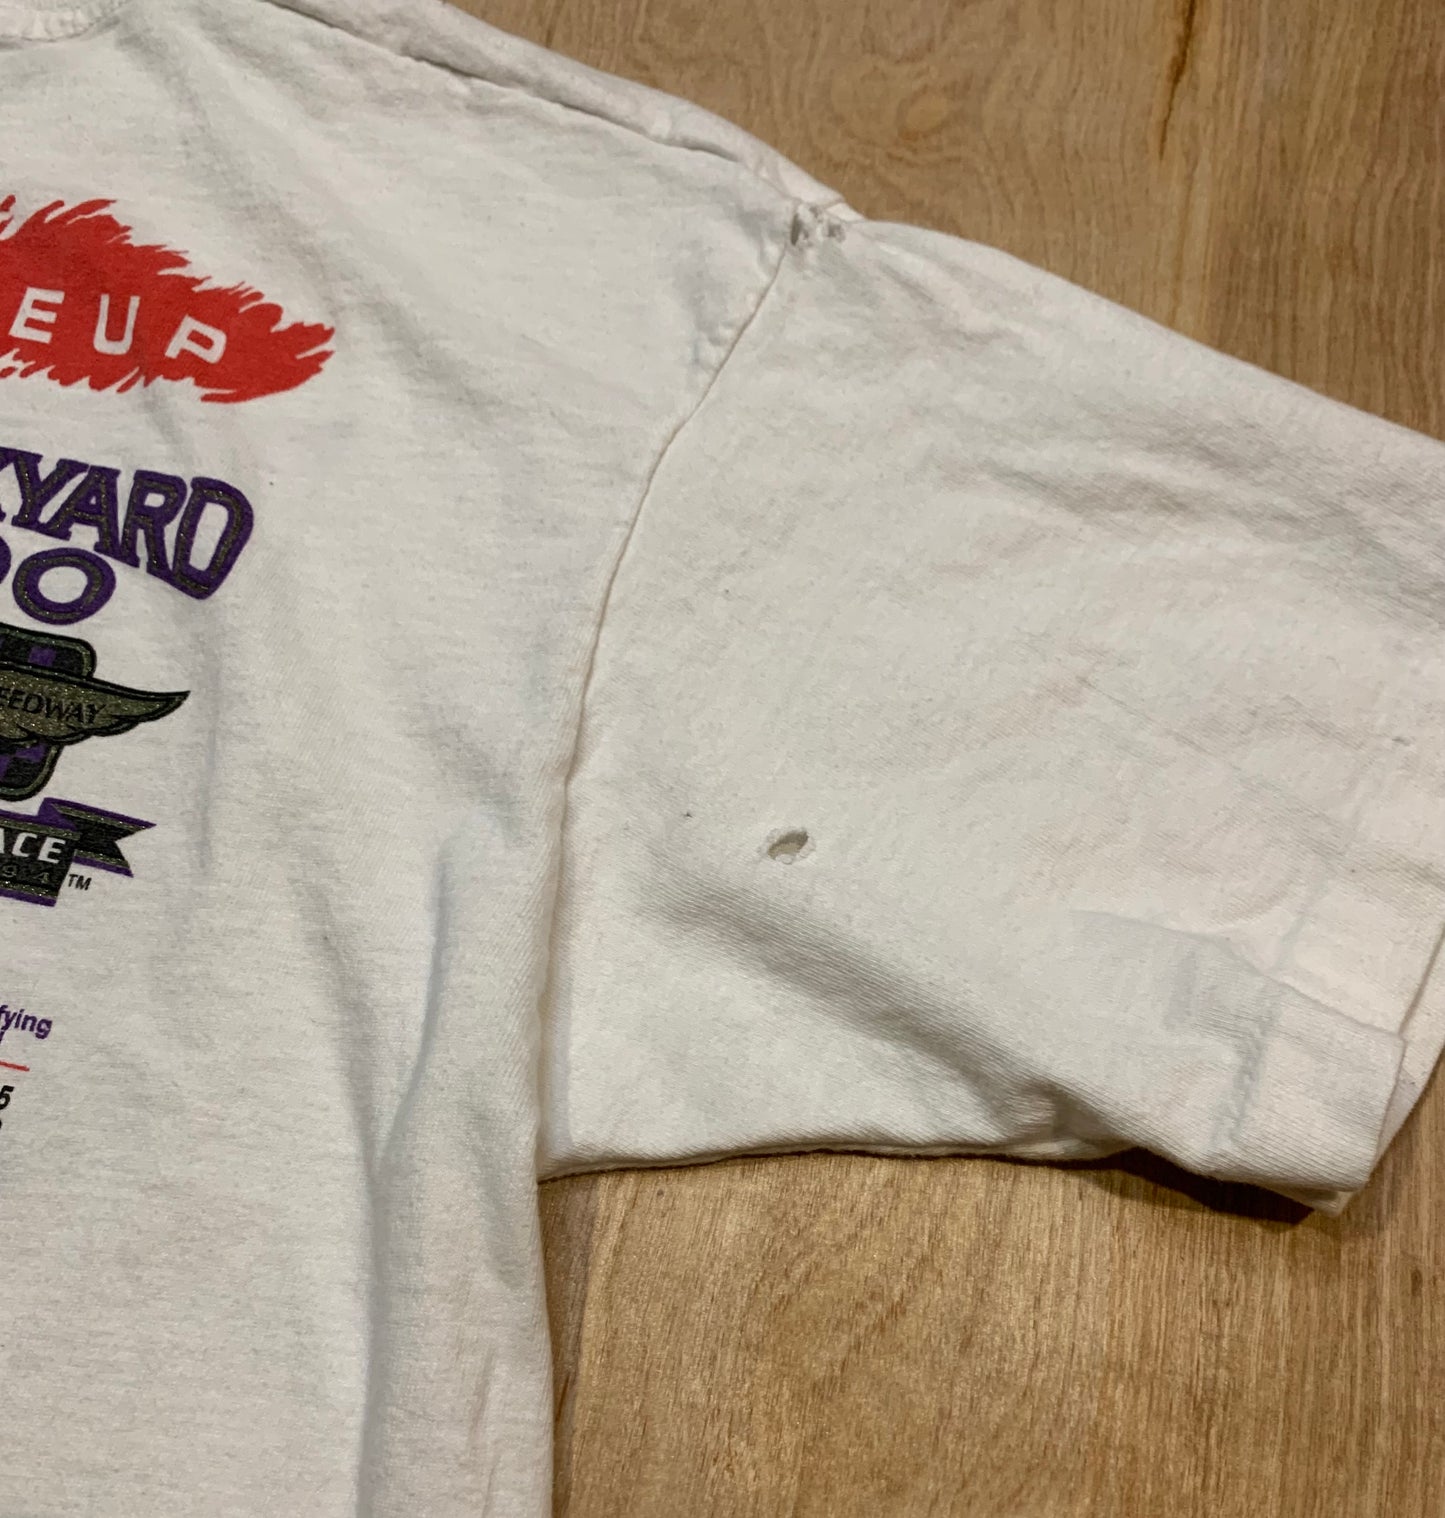 1994 Brickyard 400 Single Stitch T-Shirt